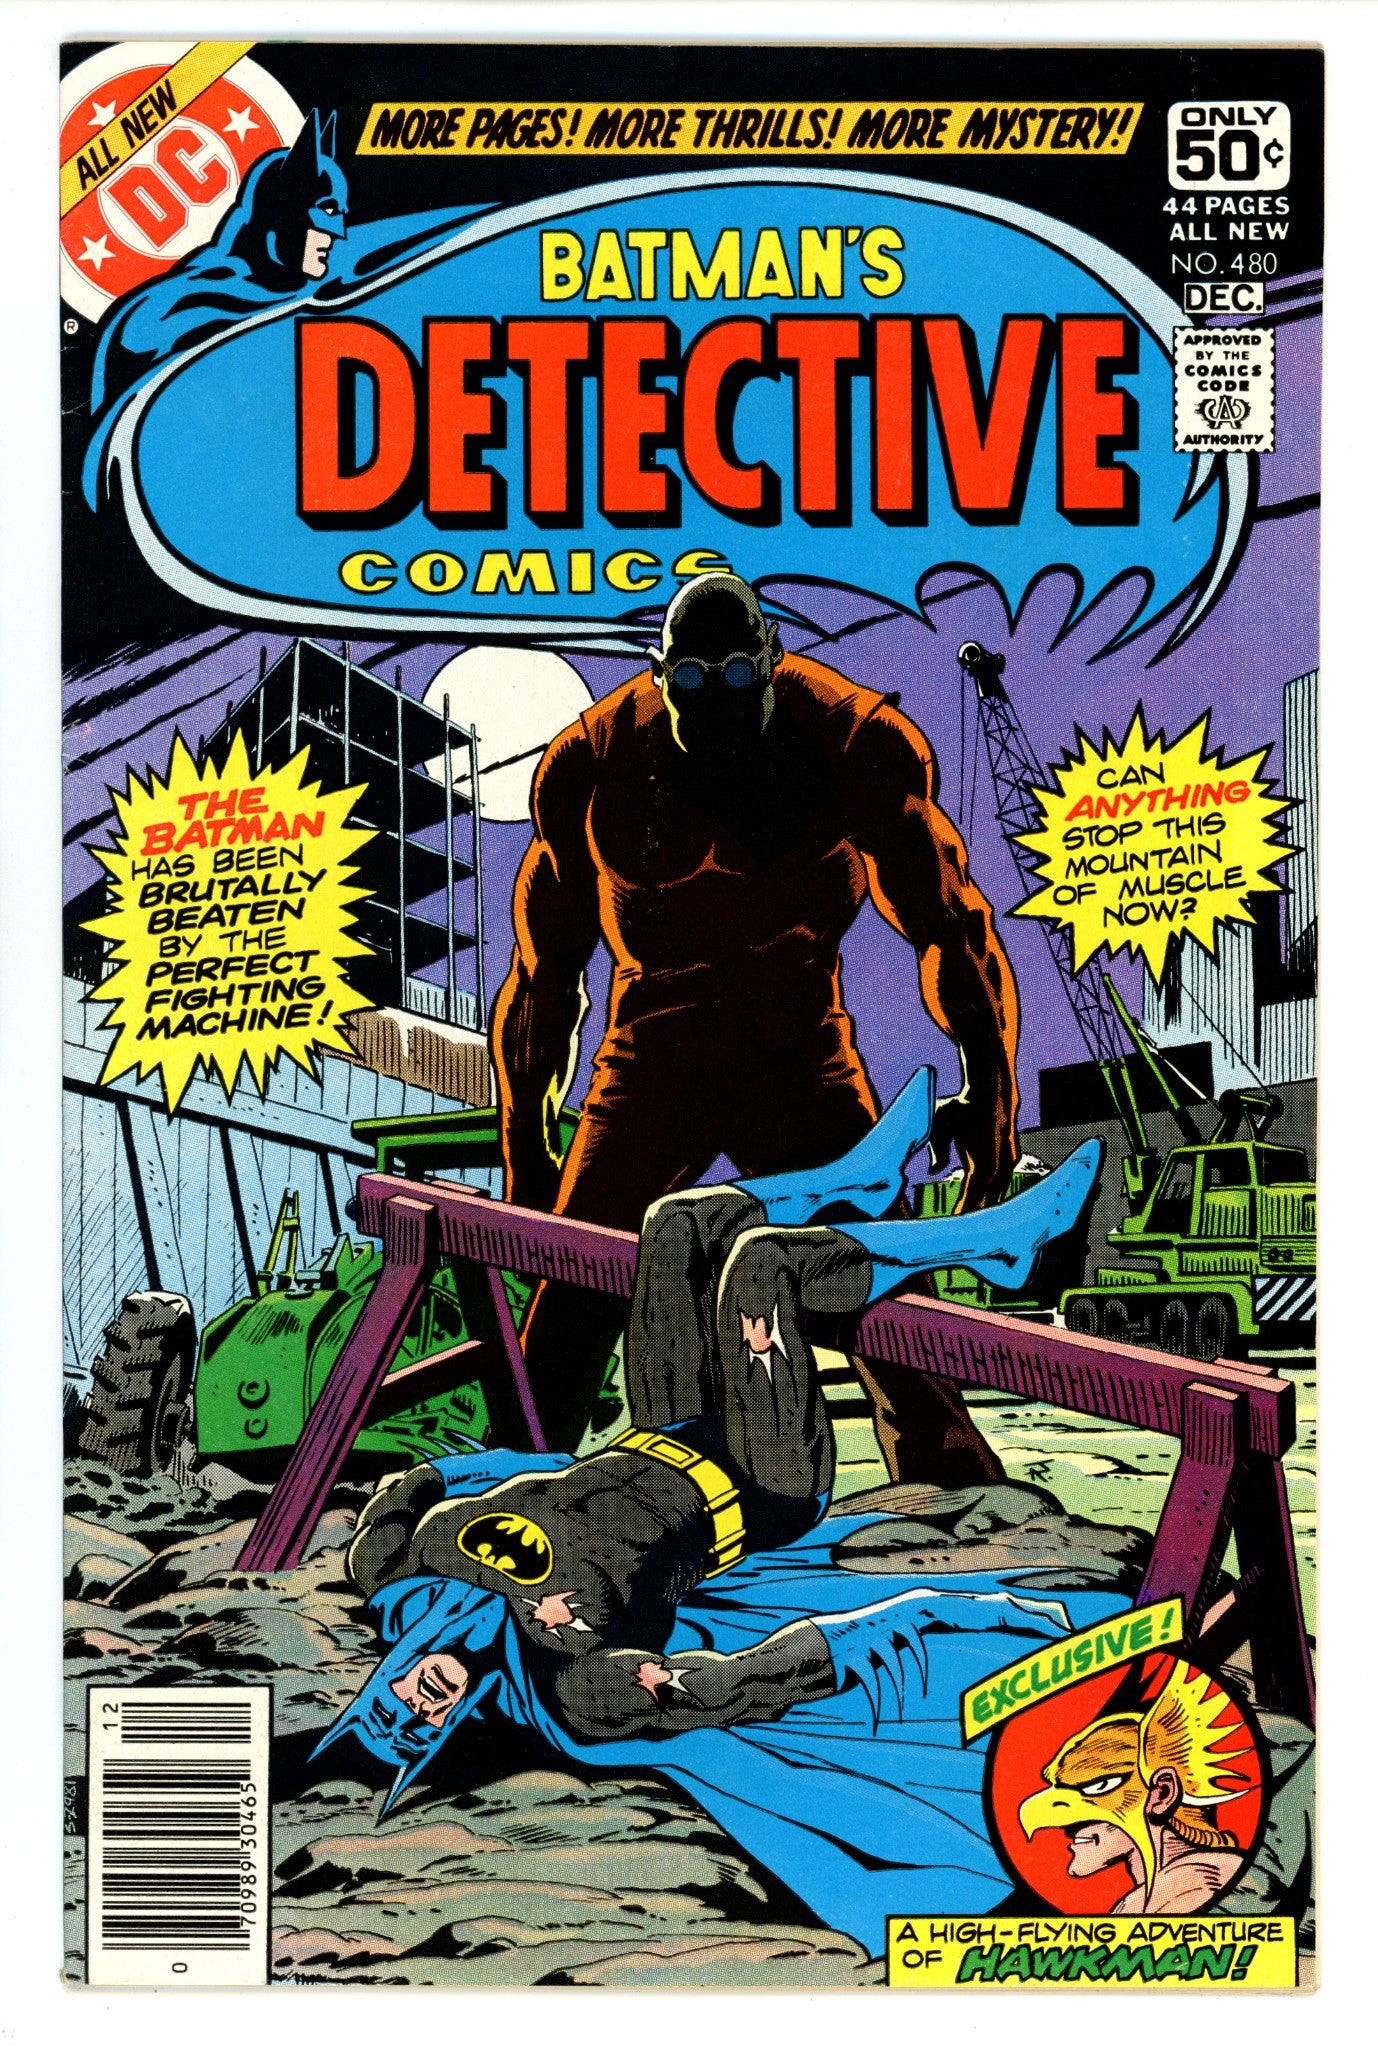 Detective Comics Vol 1 480 FN/VF (7.0) (1978) 